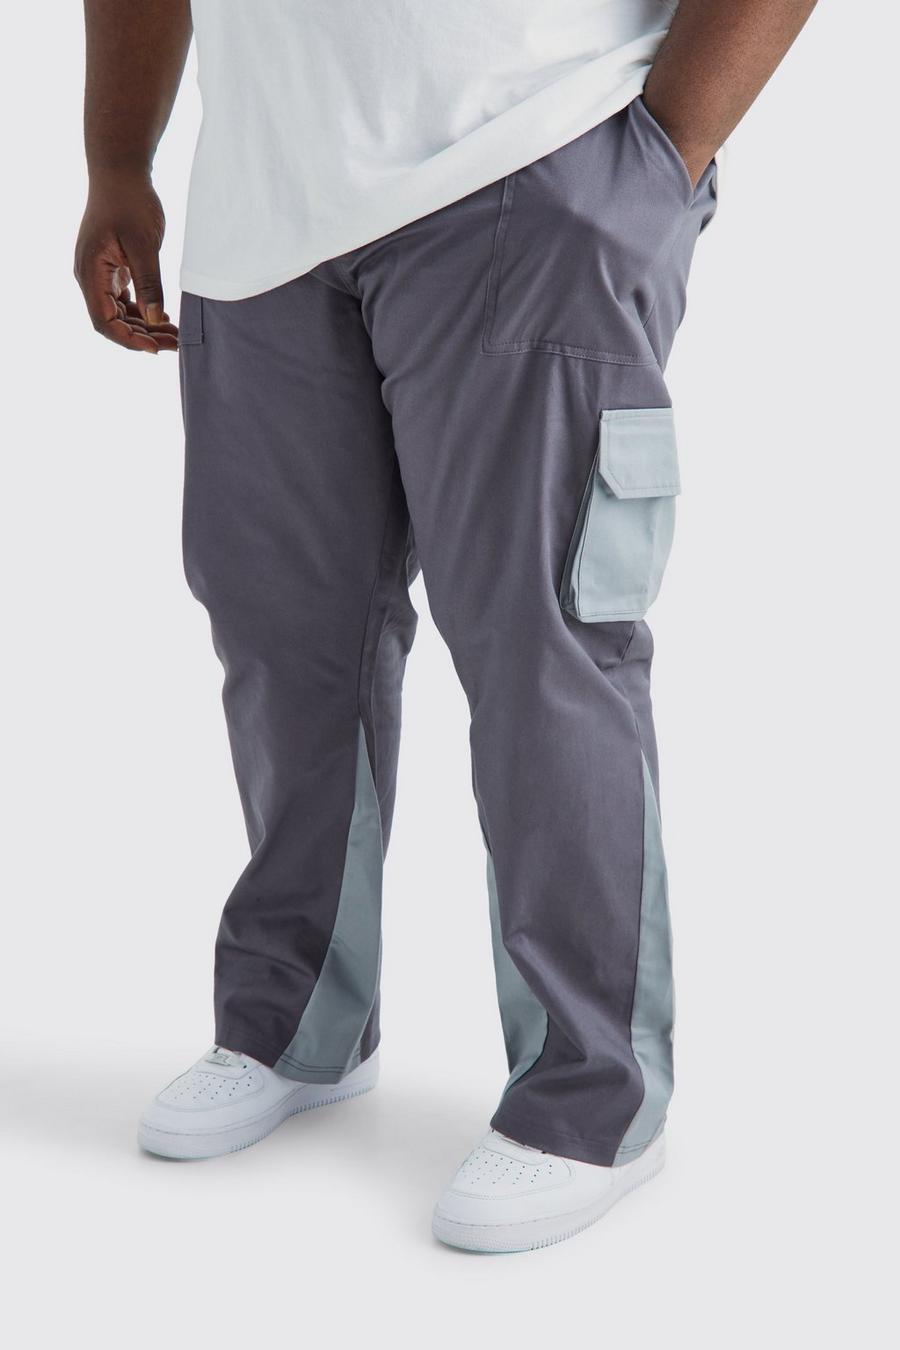 Pantaloni Cargo Plus Size a zampa Slim Fit a blocchi di colore con inserti, Charcoal